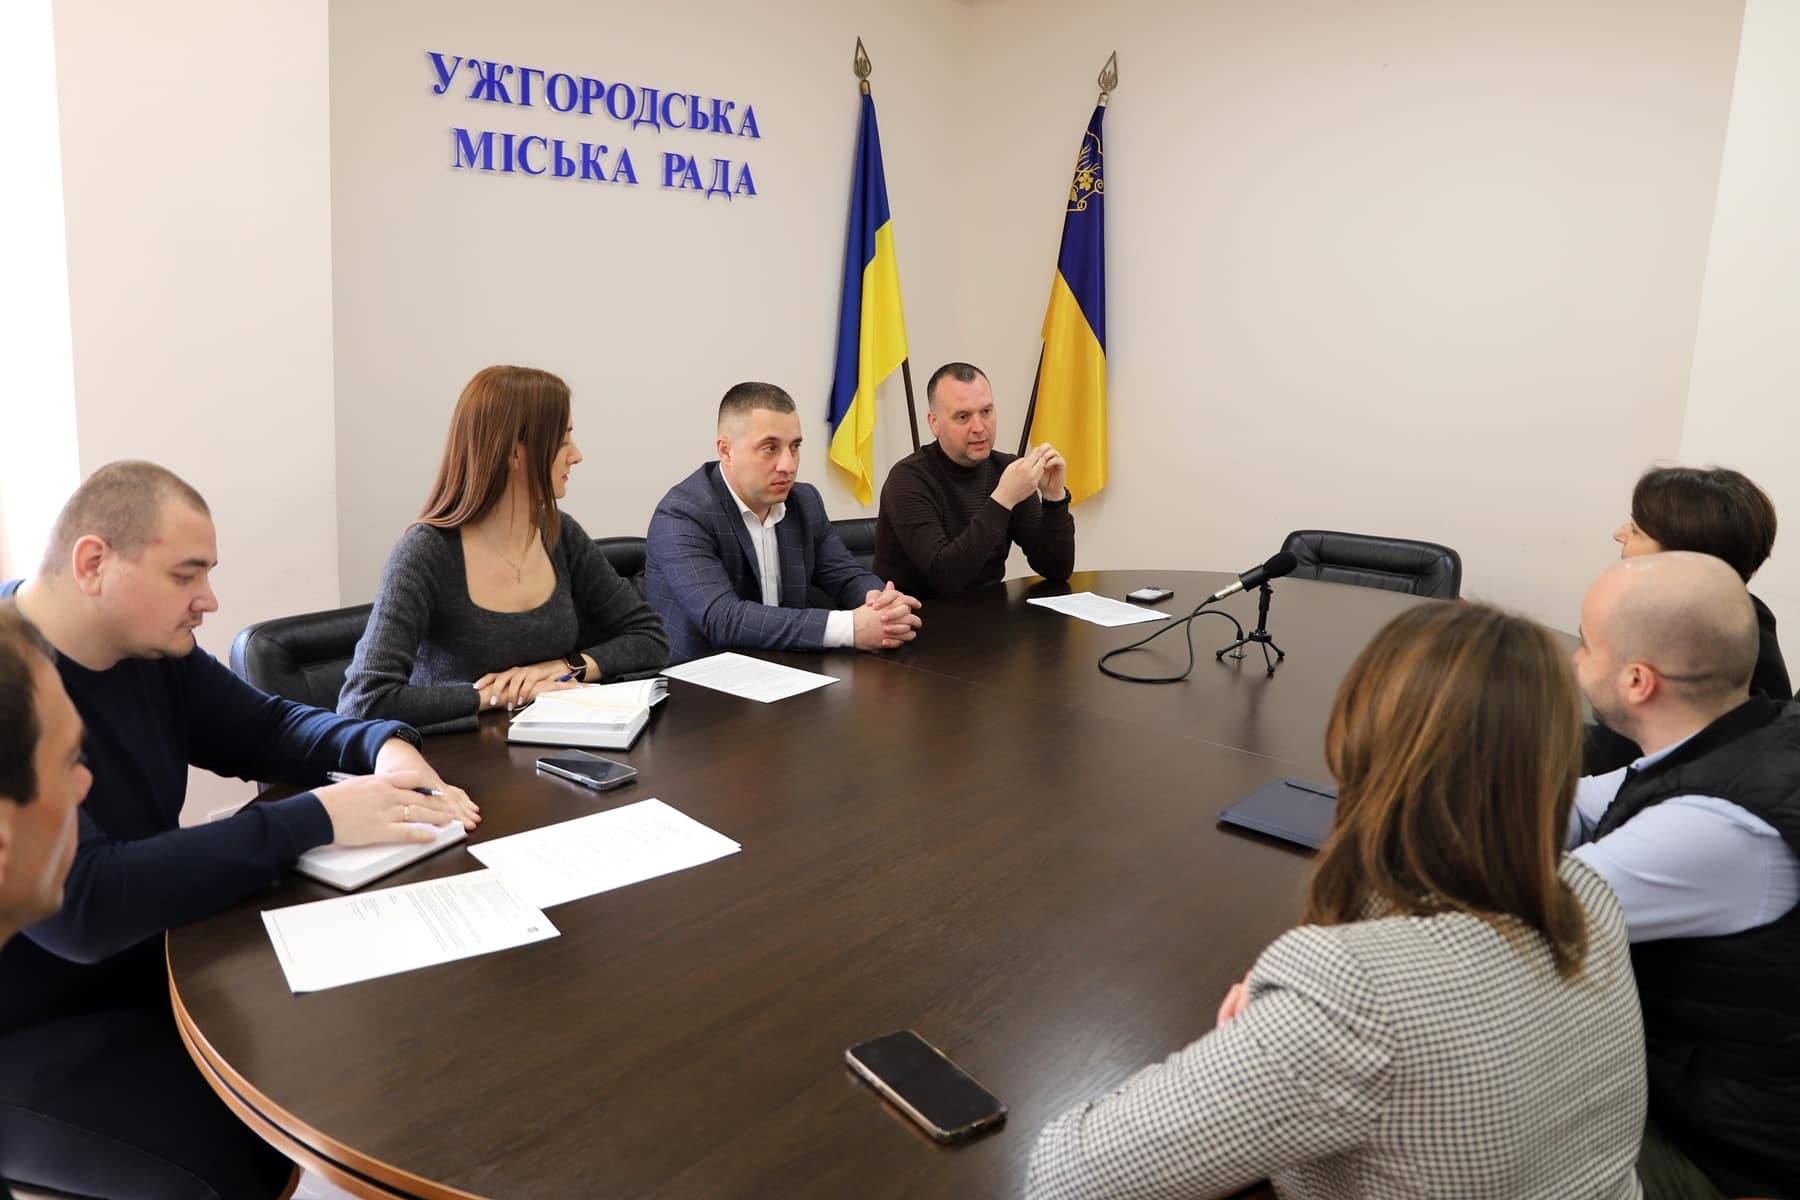 Пропозицію створити в Ужгороді осередок Української академії лідерства обговорили на зустрічі в міській раді